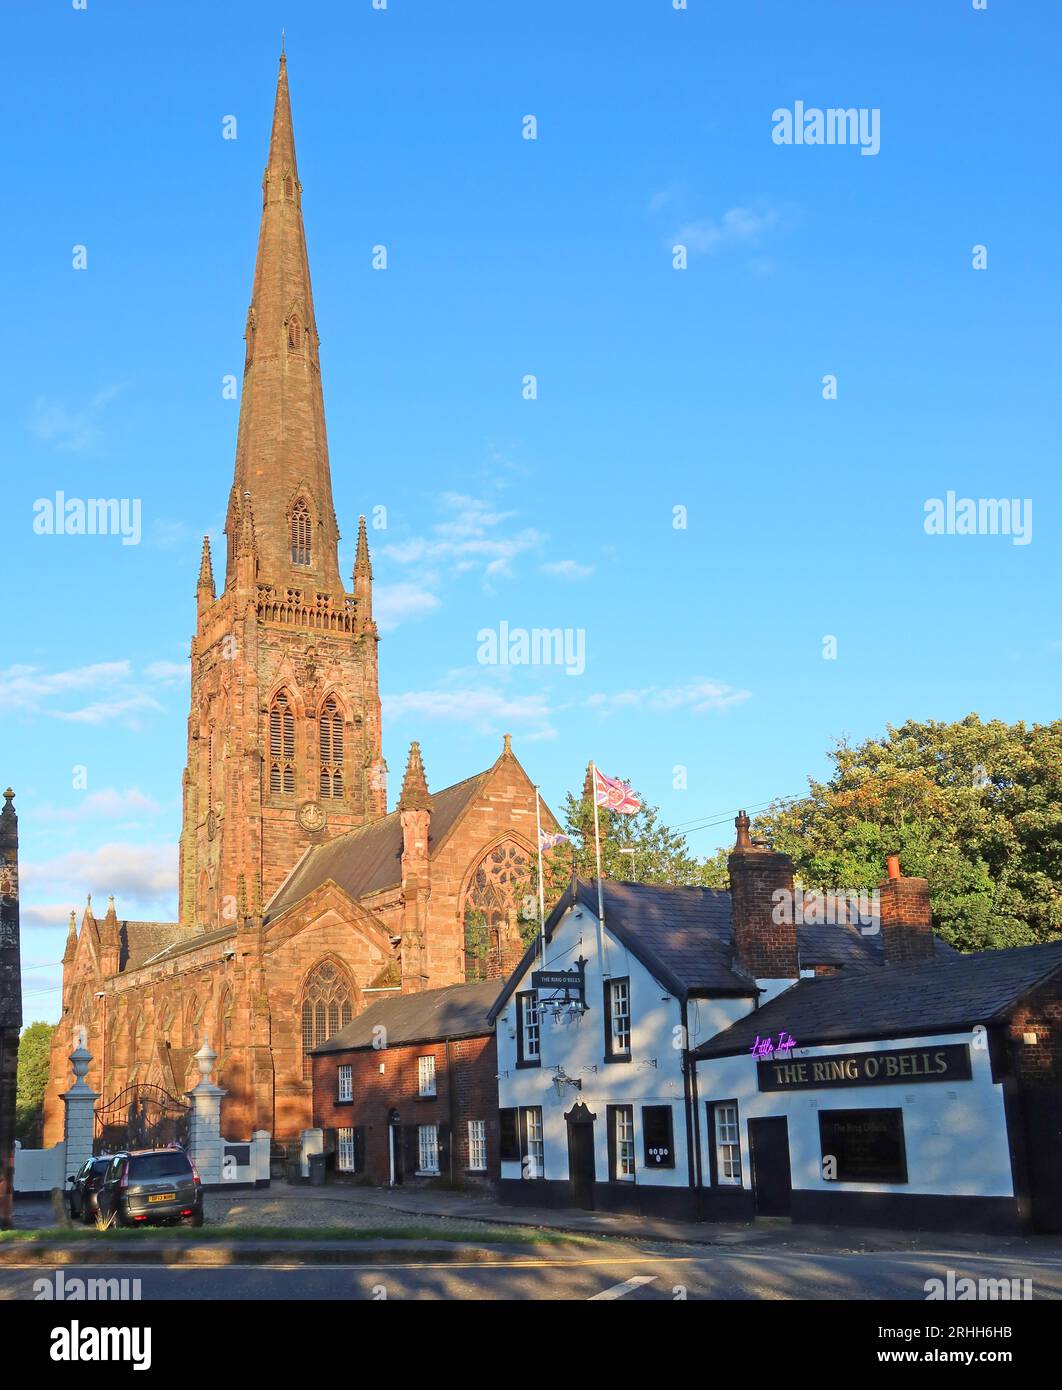 St Elphin's Parish Church & Ring of Bells pub, coucher de soleil en soirée, Church Street, Warrington, Cheshire, ANGLETERRE, ROYAUME-UNI, WA1 2TL Banque D'Images